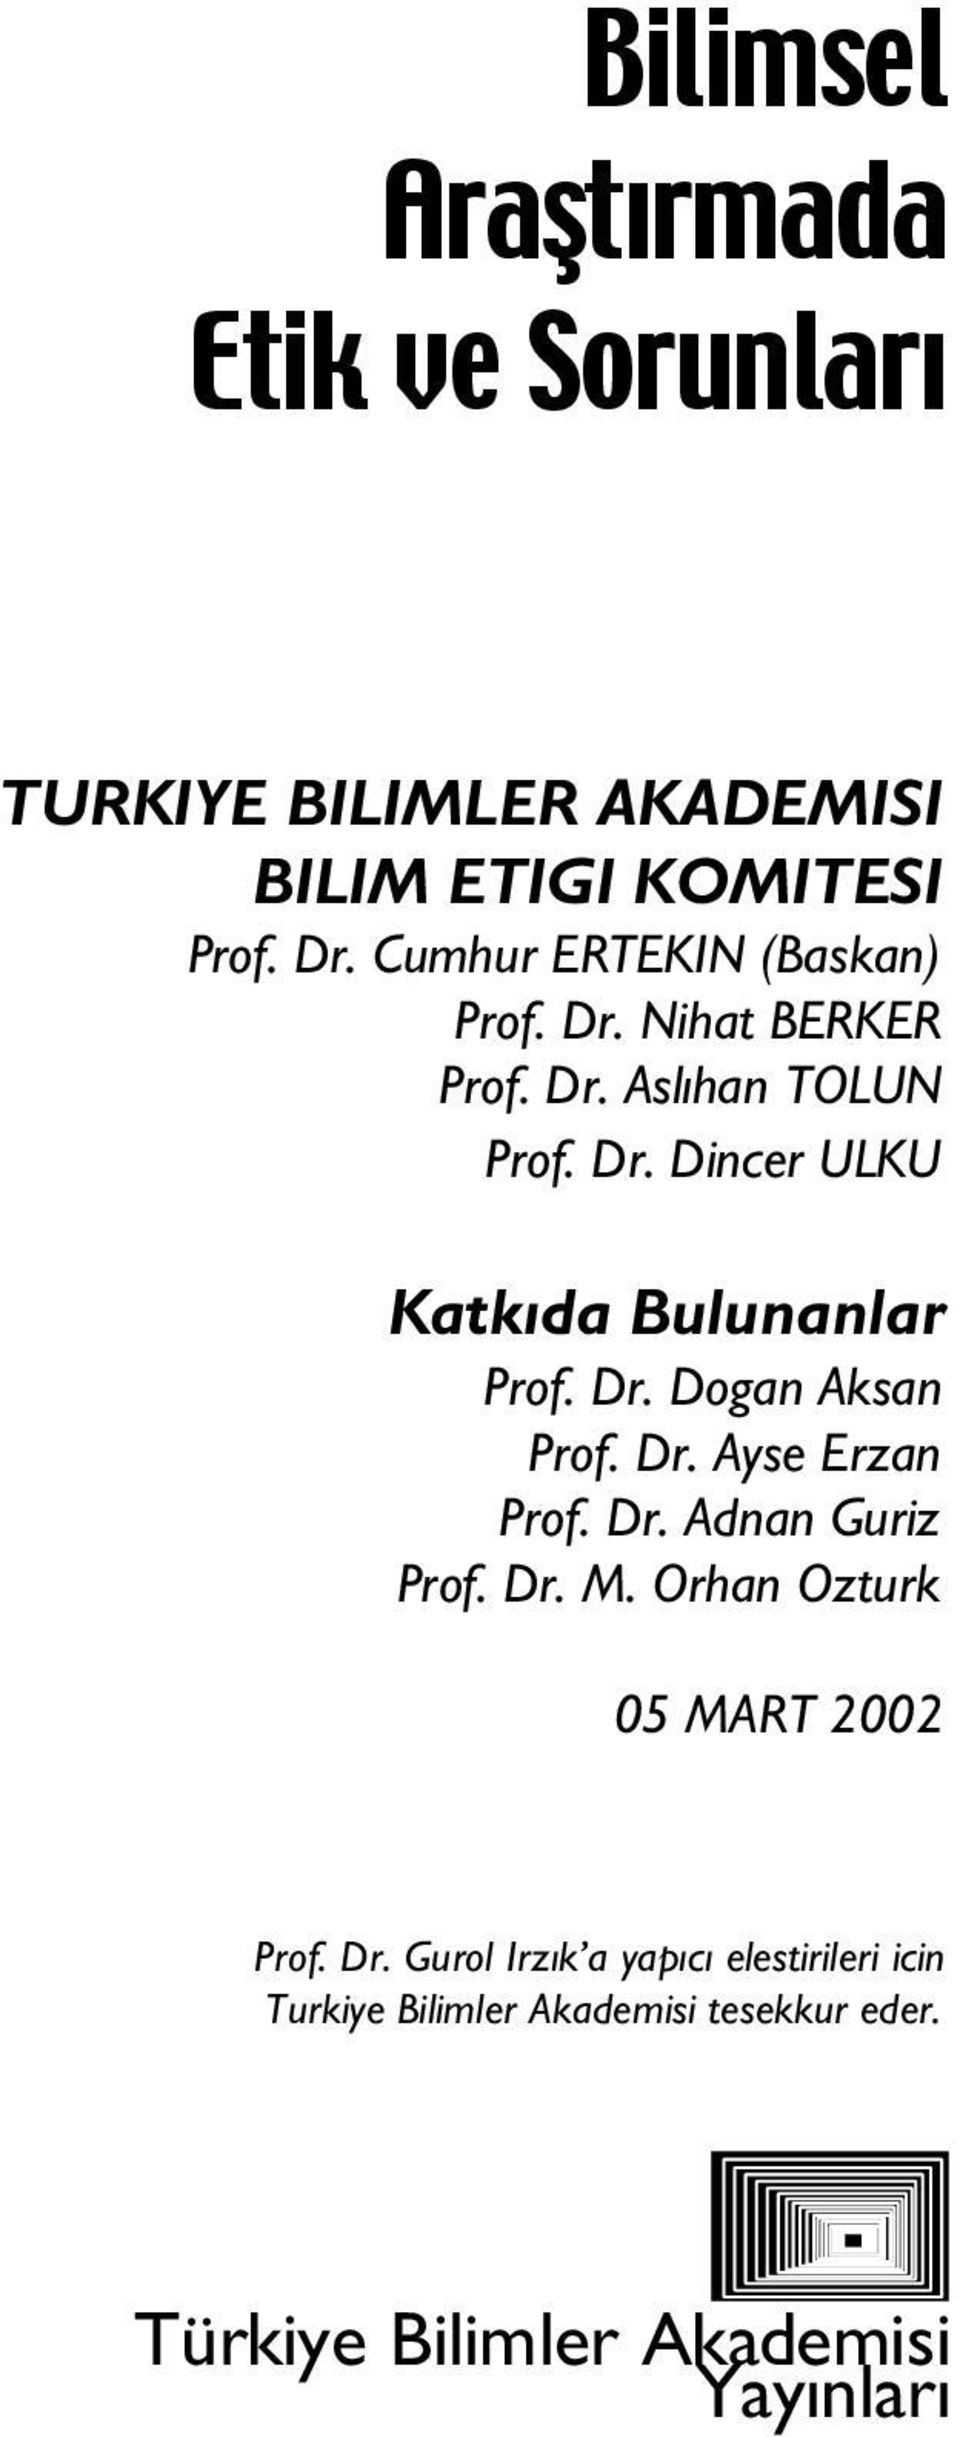 Dr. Do an Aksan Prof. Dr. Ayfle Erzan Prof. Dr. Adnan Güriz Prof. Dr. M. Orhan Öztürk 05 MART 2002 Prof. Dr. Gürol Irz k a yap c elefltirileri için Türkiye Bilimler Akademisi teflekkür eder.